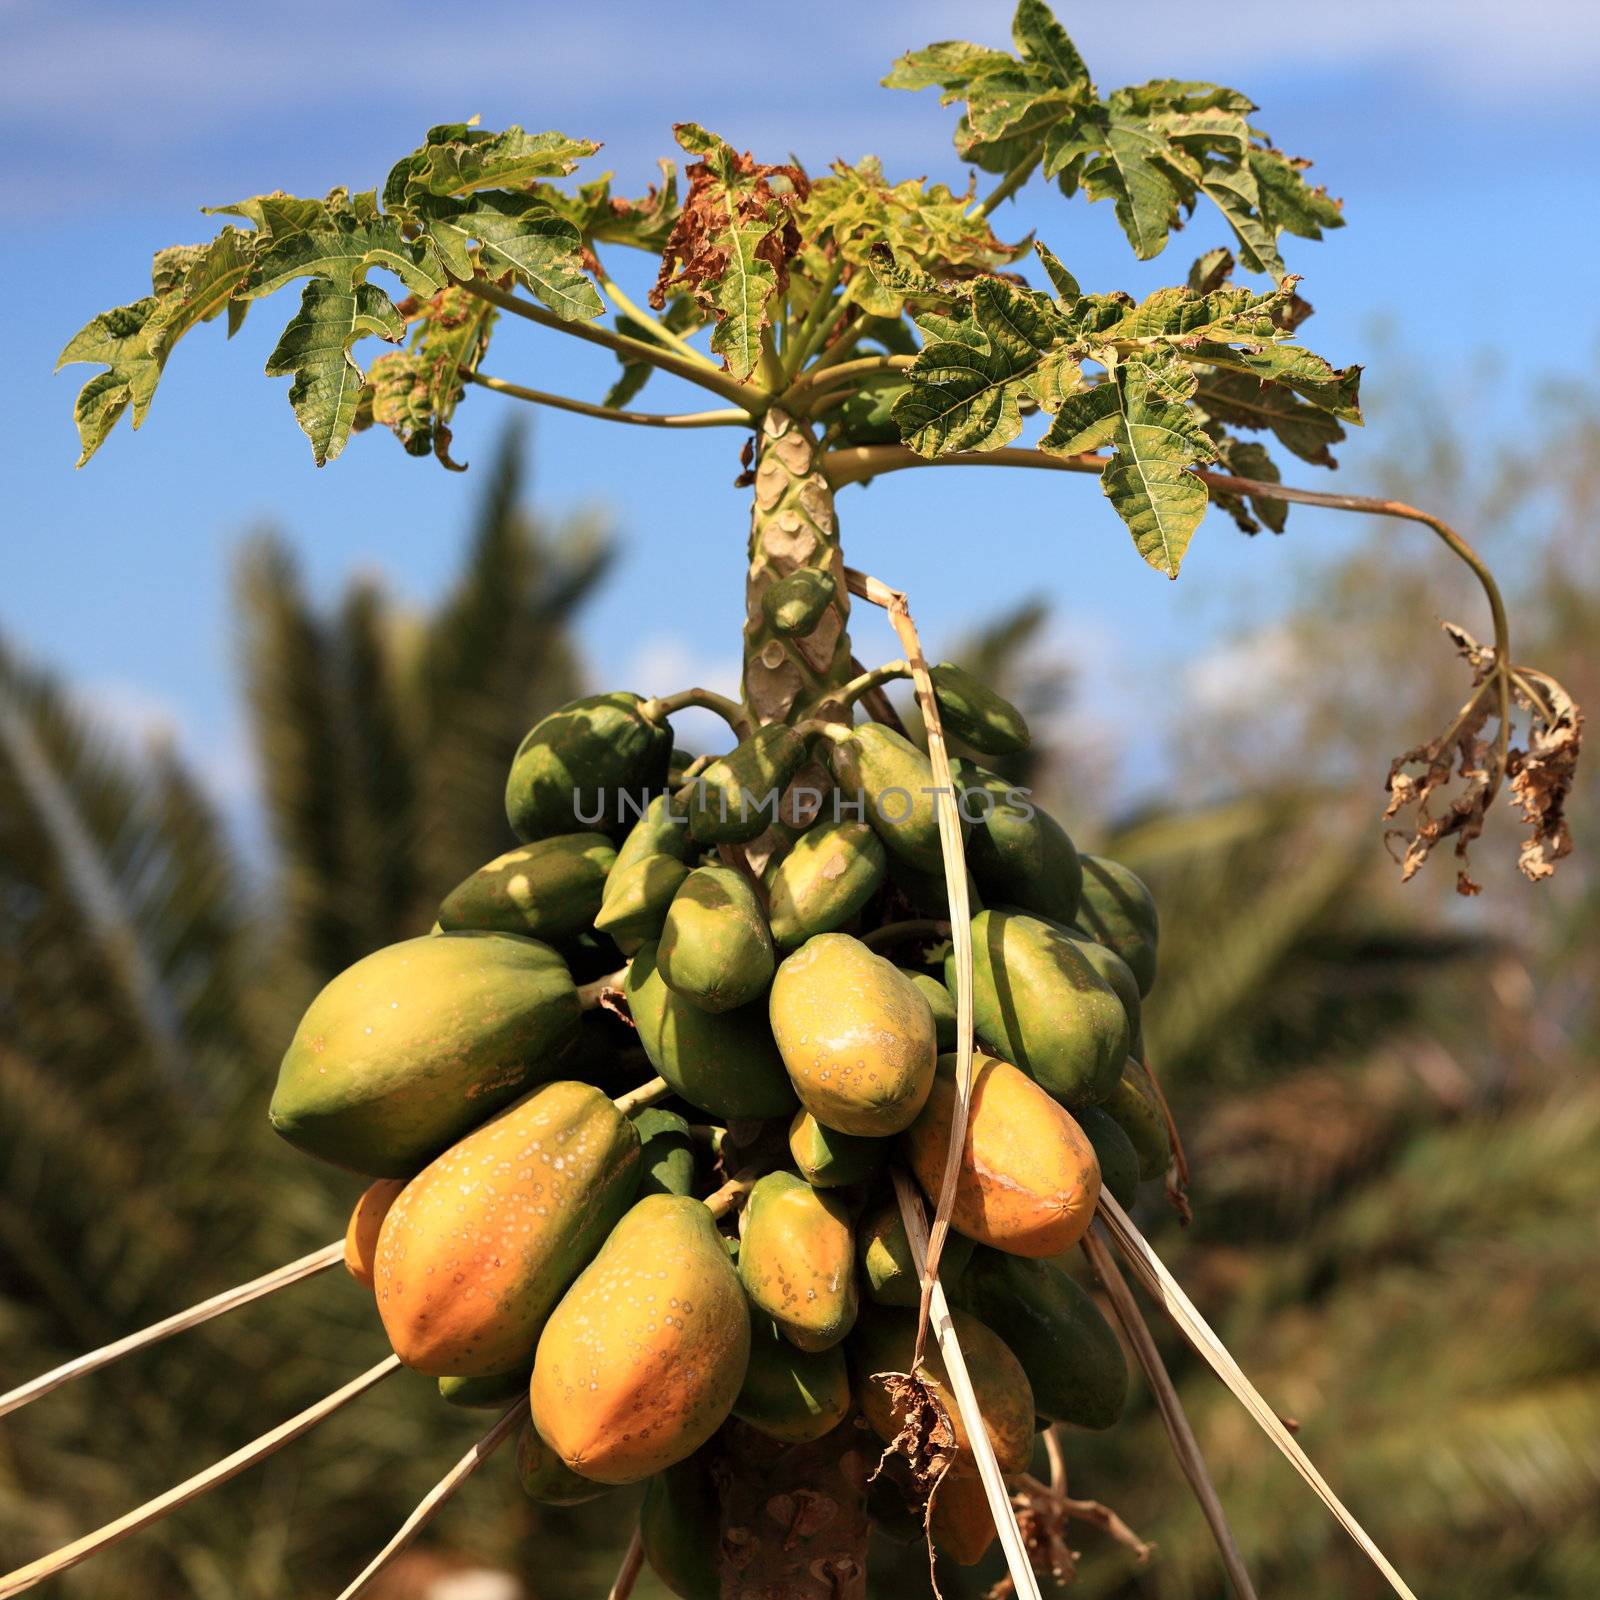 Papaya tree with many ripe and mature papayas. Photo from Tenerife, Canary Islands, Spain.